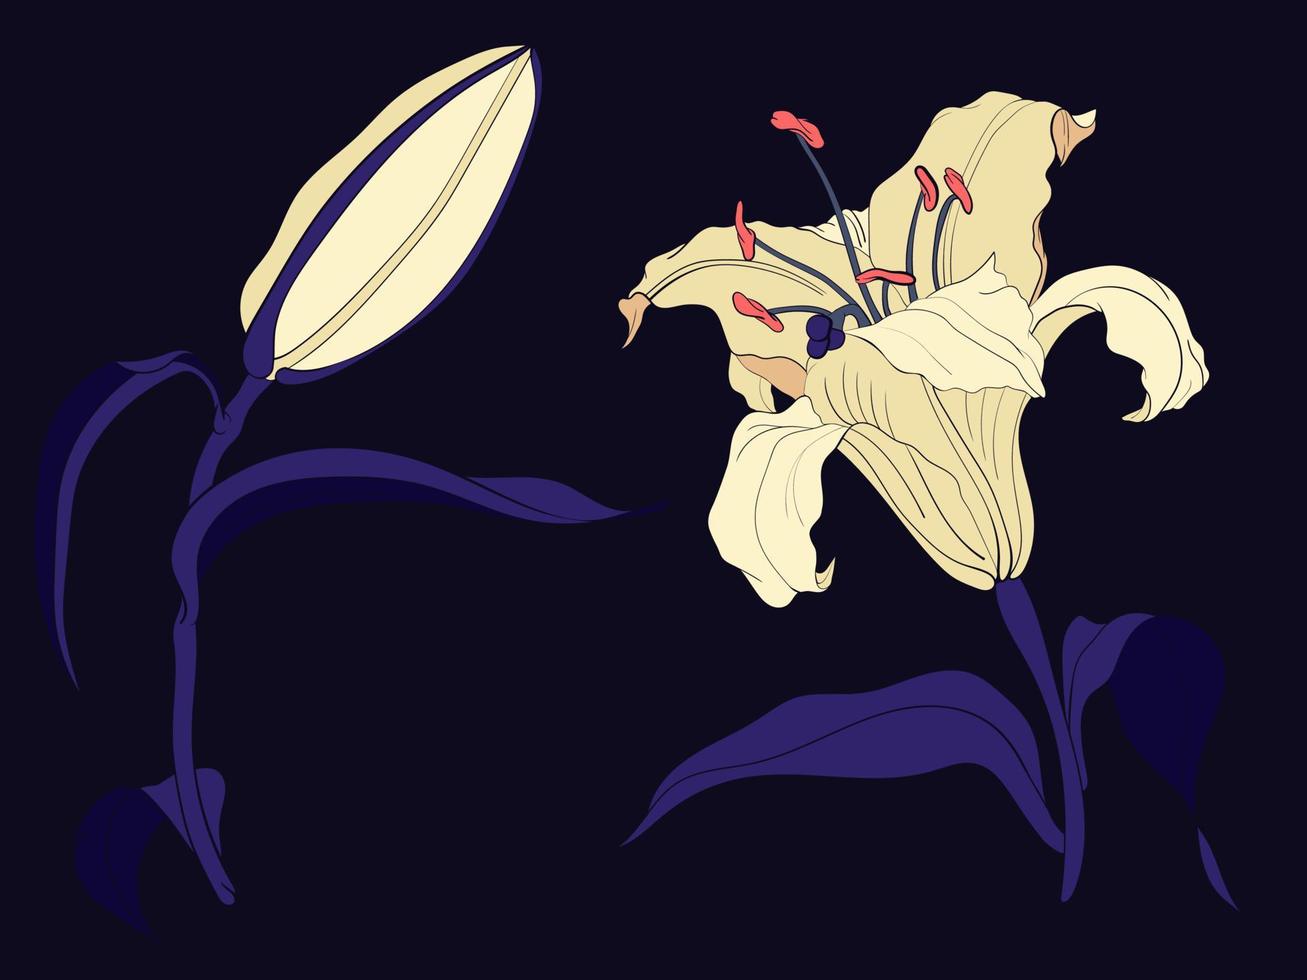 orientalisk lilja blomma och knopp, färgad illustration vektor